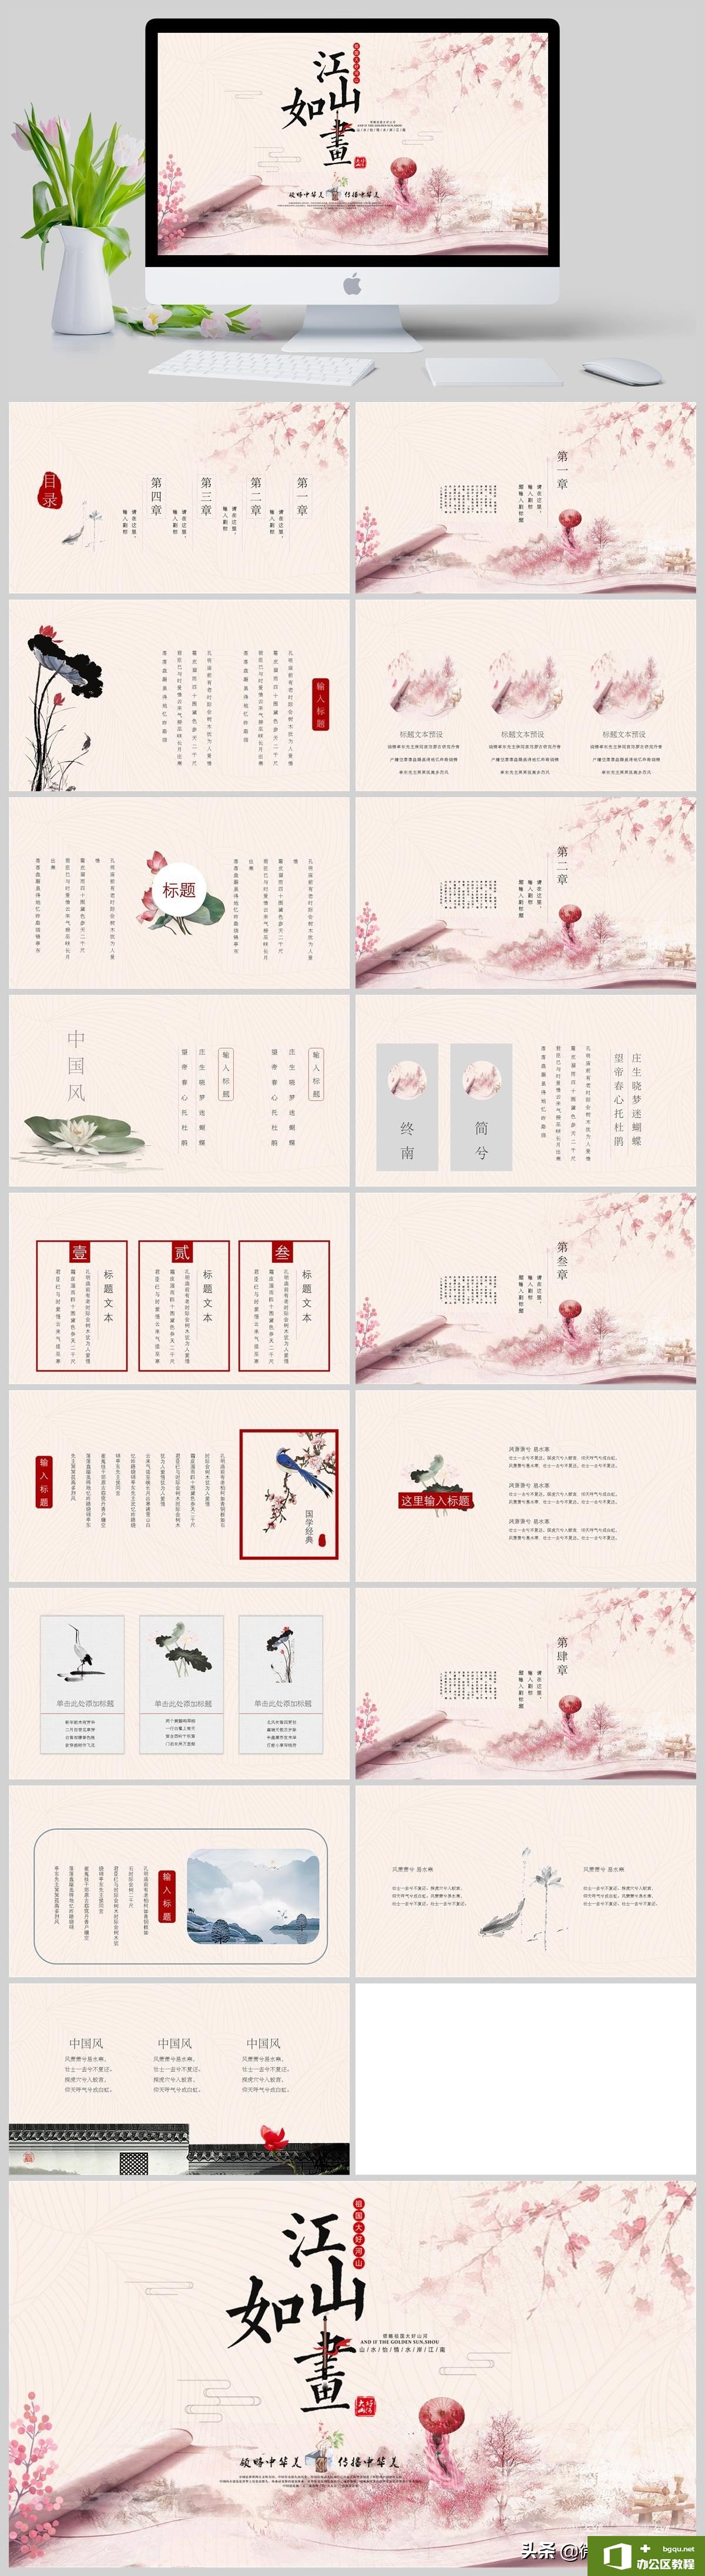 粉色水墨中国风江山如画总结计划国学教育培训通用PPT模板 免费下载